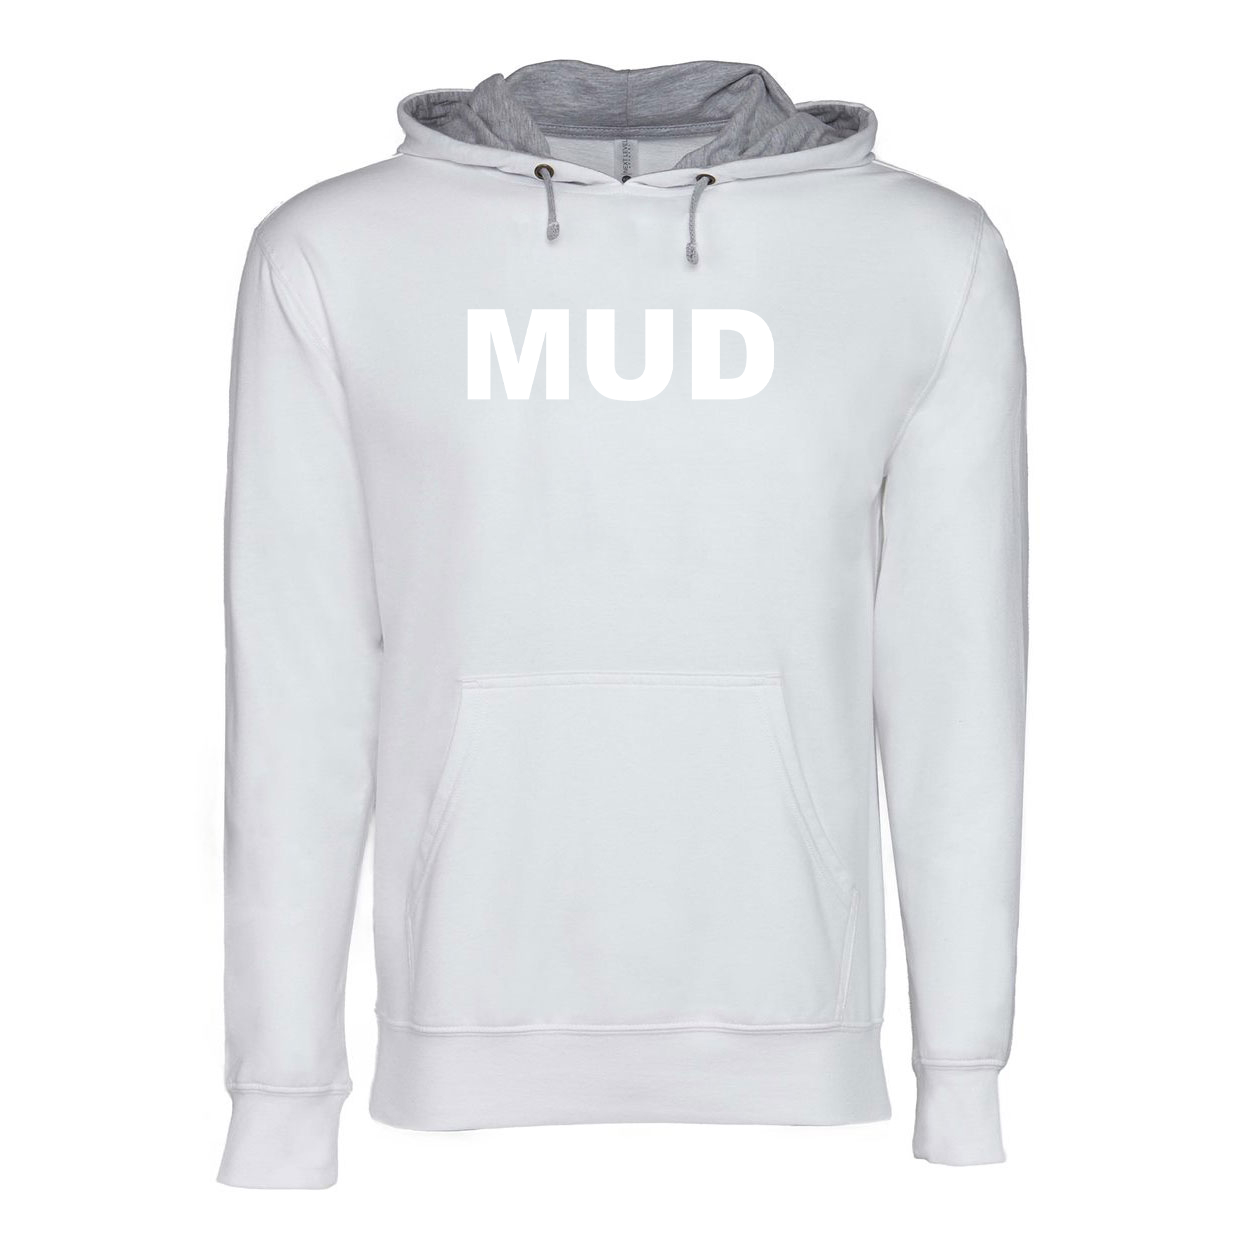 Mud Brand Logo Classic Lightweight Sweatshirt White/Heather Gray 